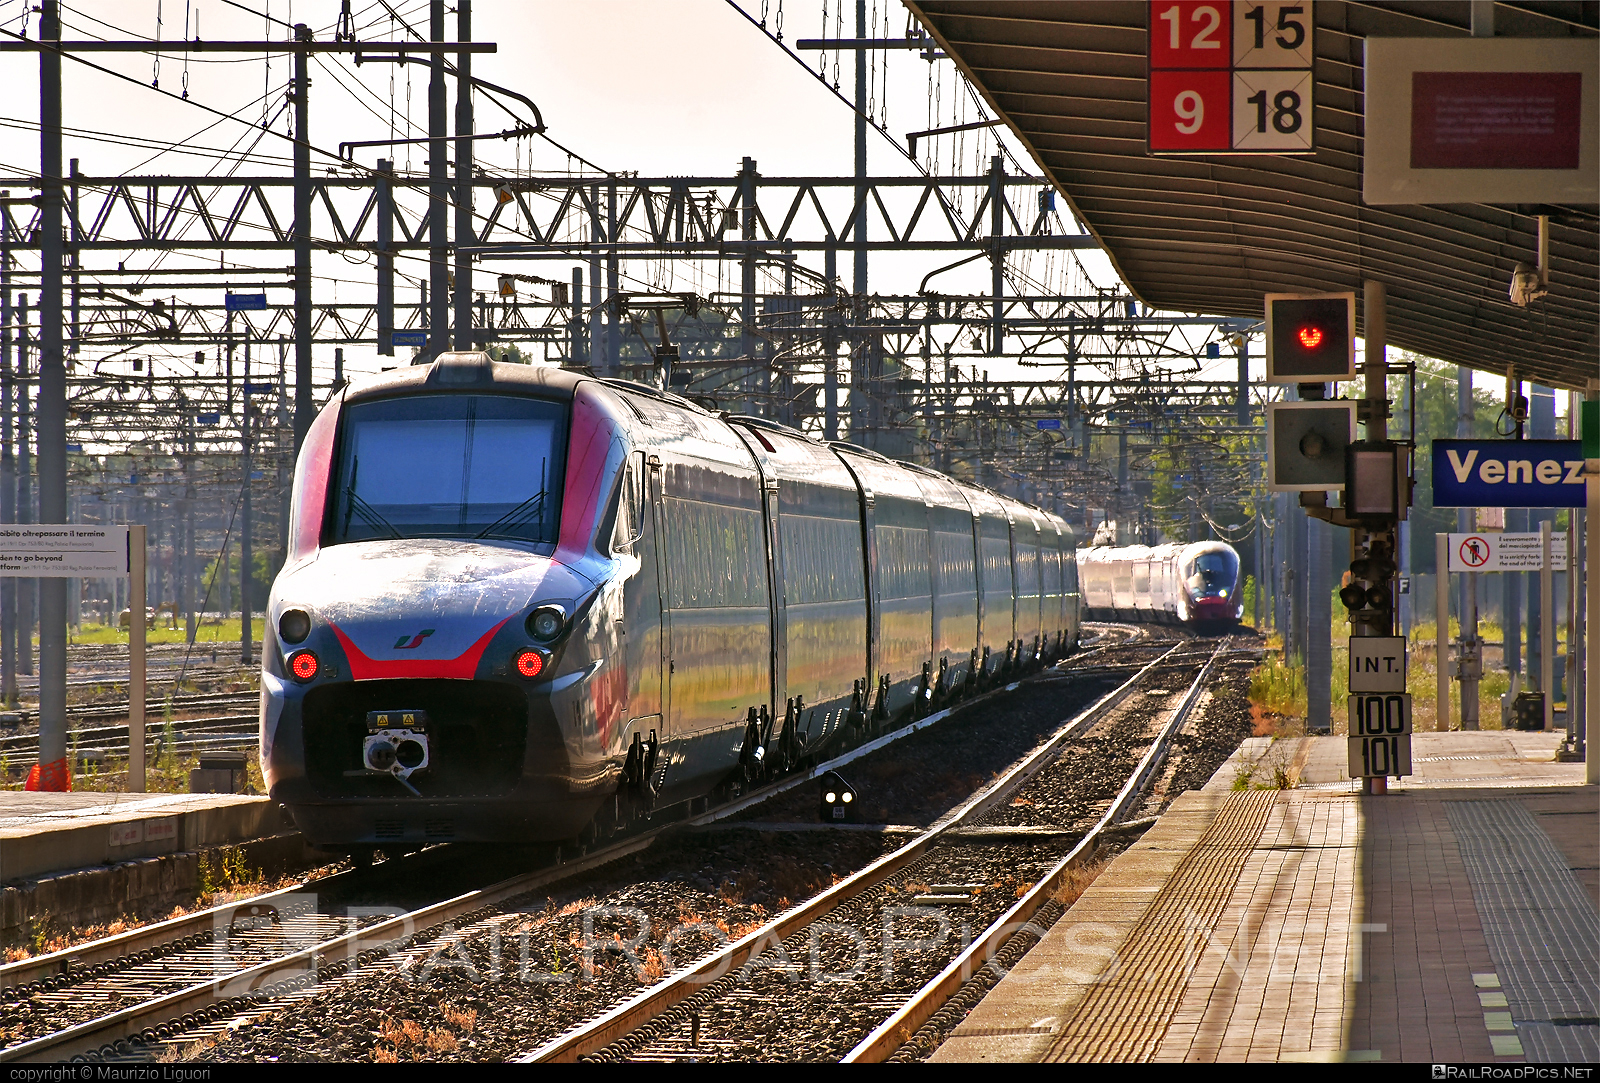 AnsaldoBreda ETR.700 - 4814 operated by Trenitalia S.p.A. #ansaldoBreda #ansaldoBredaEtr700 #etr700 #ferroviedellostato #frecciargento #fs #fsitaliane #lefrecce #trenitalia #trenitaliaspa